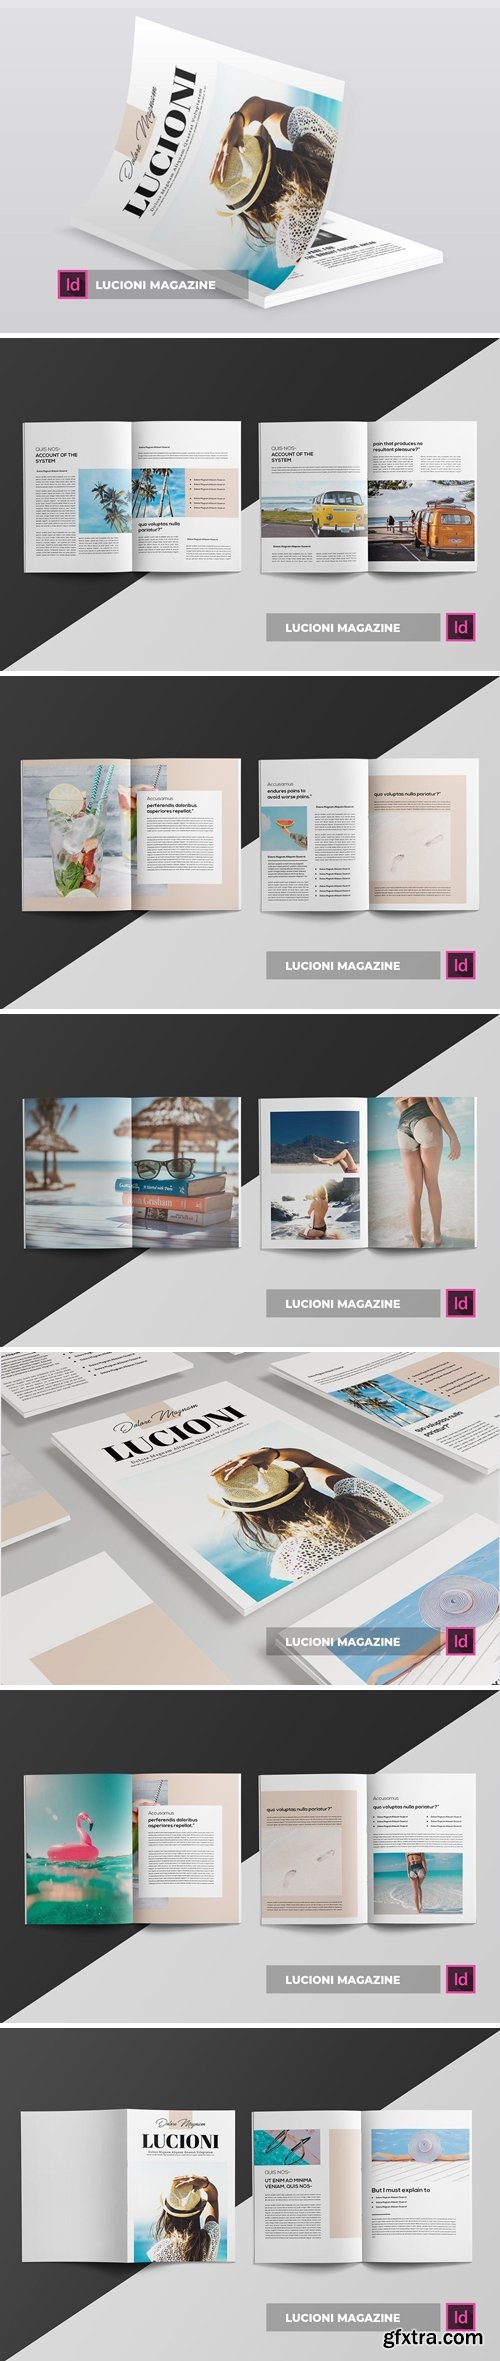 Lucioni | Magazine Template